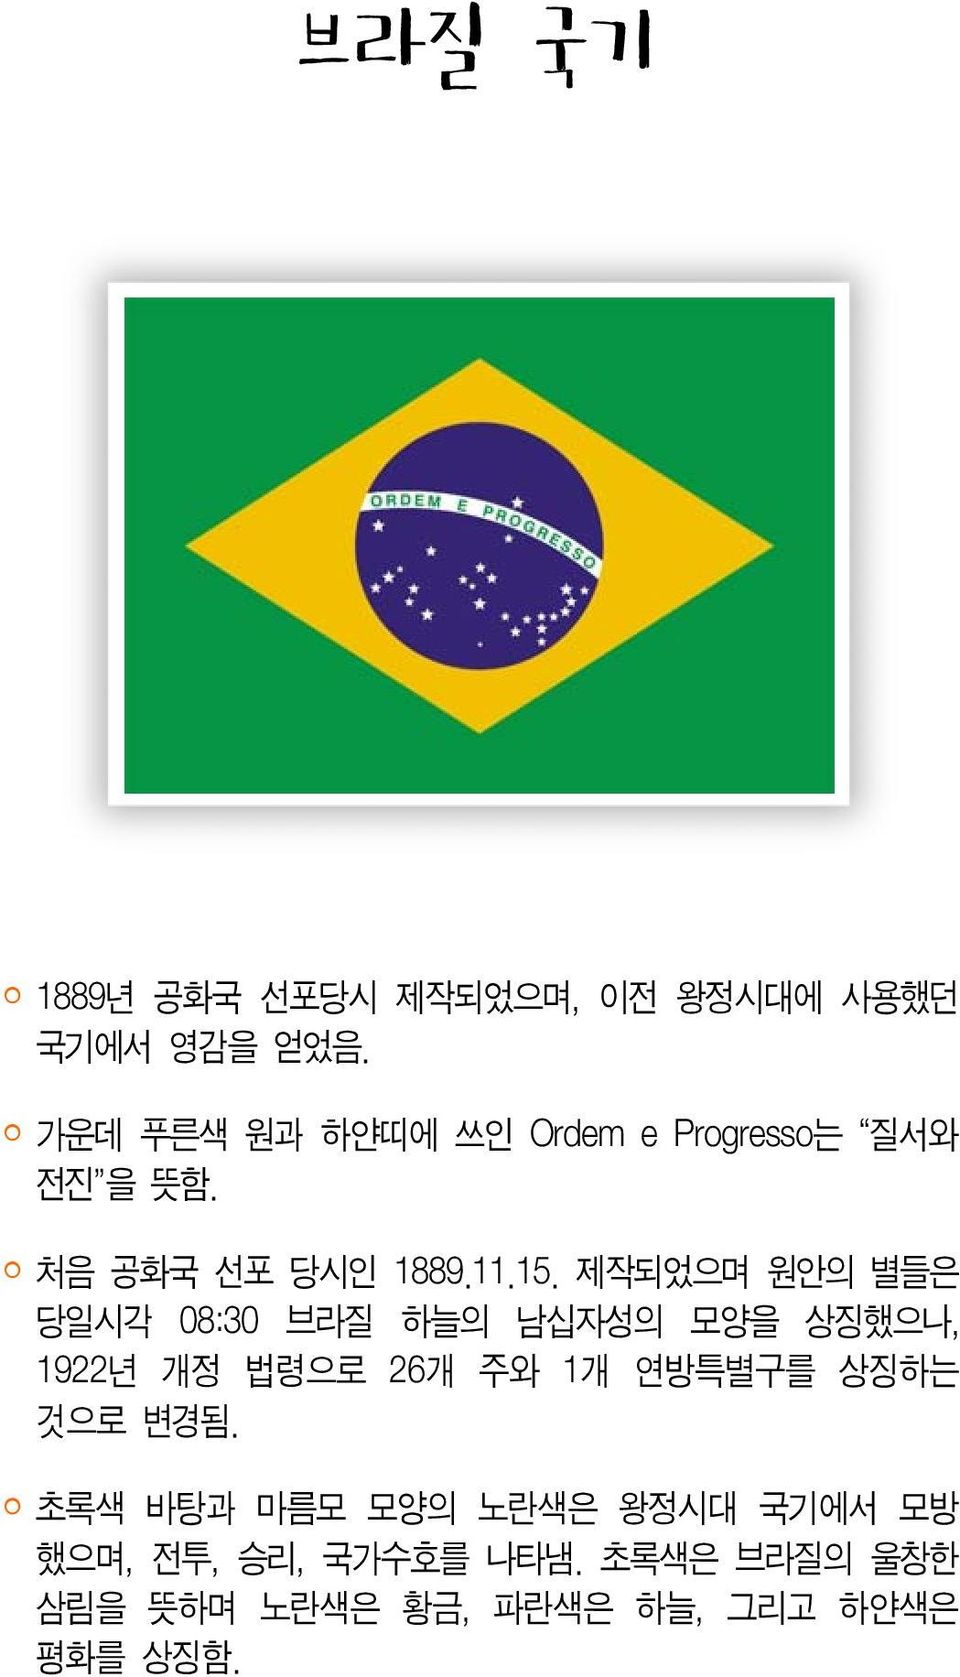 제작되었으며 원안의 별들은 당일시각 08:30 브라질 하늘의 남십자성의 모양을 상징했으나, 1922년 개정 법령으로 26개 주와 1개 연방특별구를 상징하는